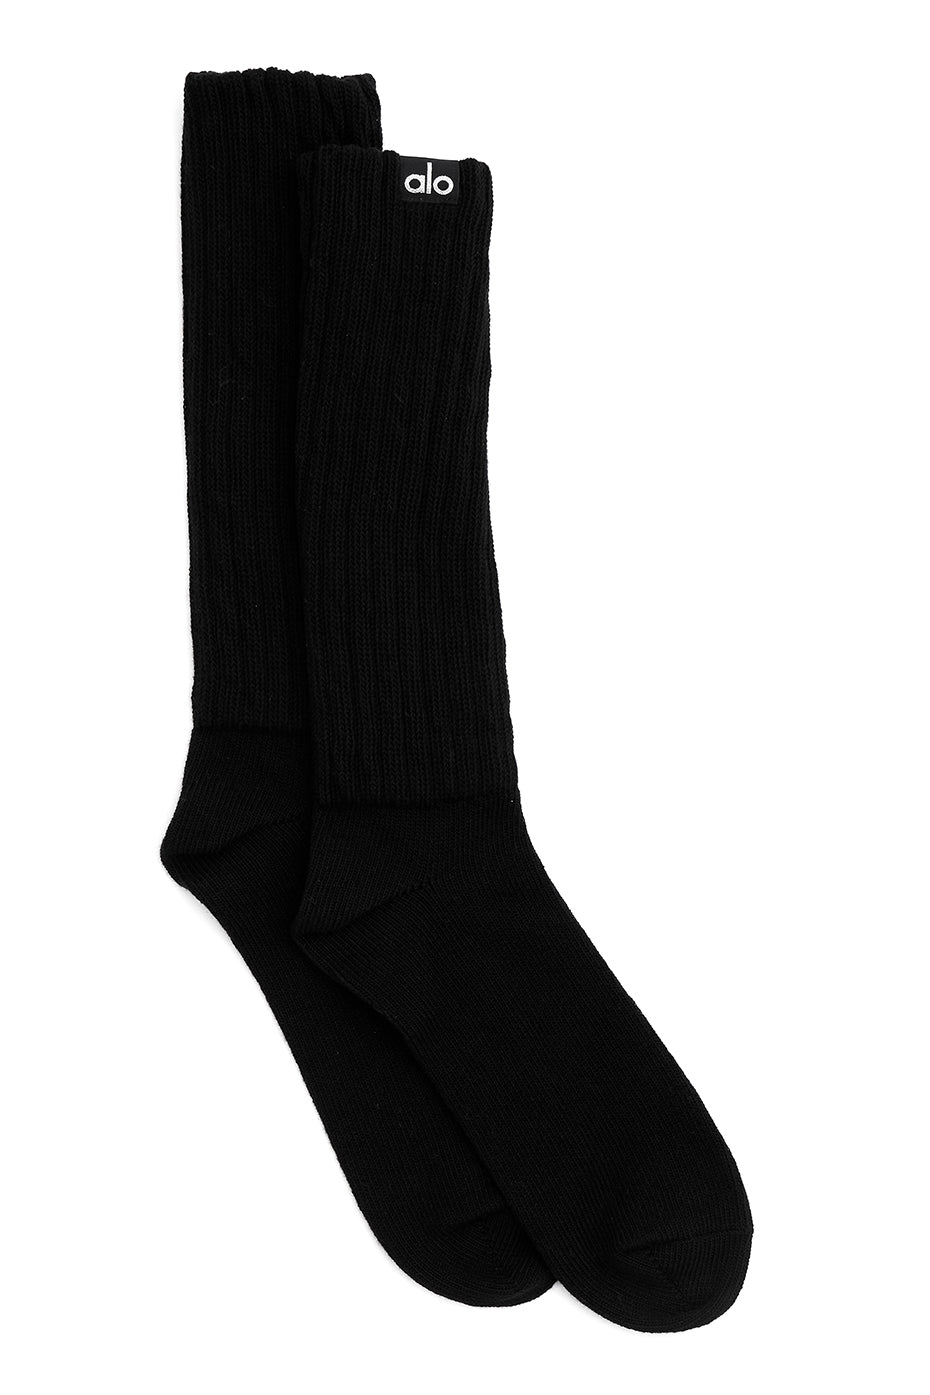 Sanabul New Item Foot Grip Socks for Men & Women, MMA, Kickboxing,  Wrestling, Pilates, Yoga Anti Slip Socks, Non Slip Socks (Medium, Red)  price in Saudi Arabia,  Saudi Arabia